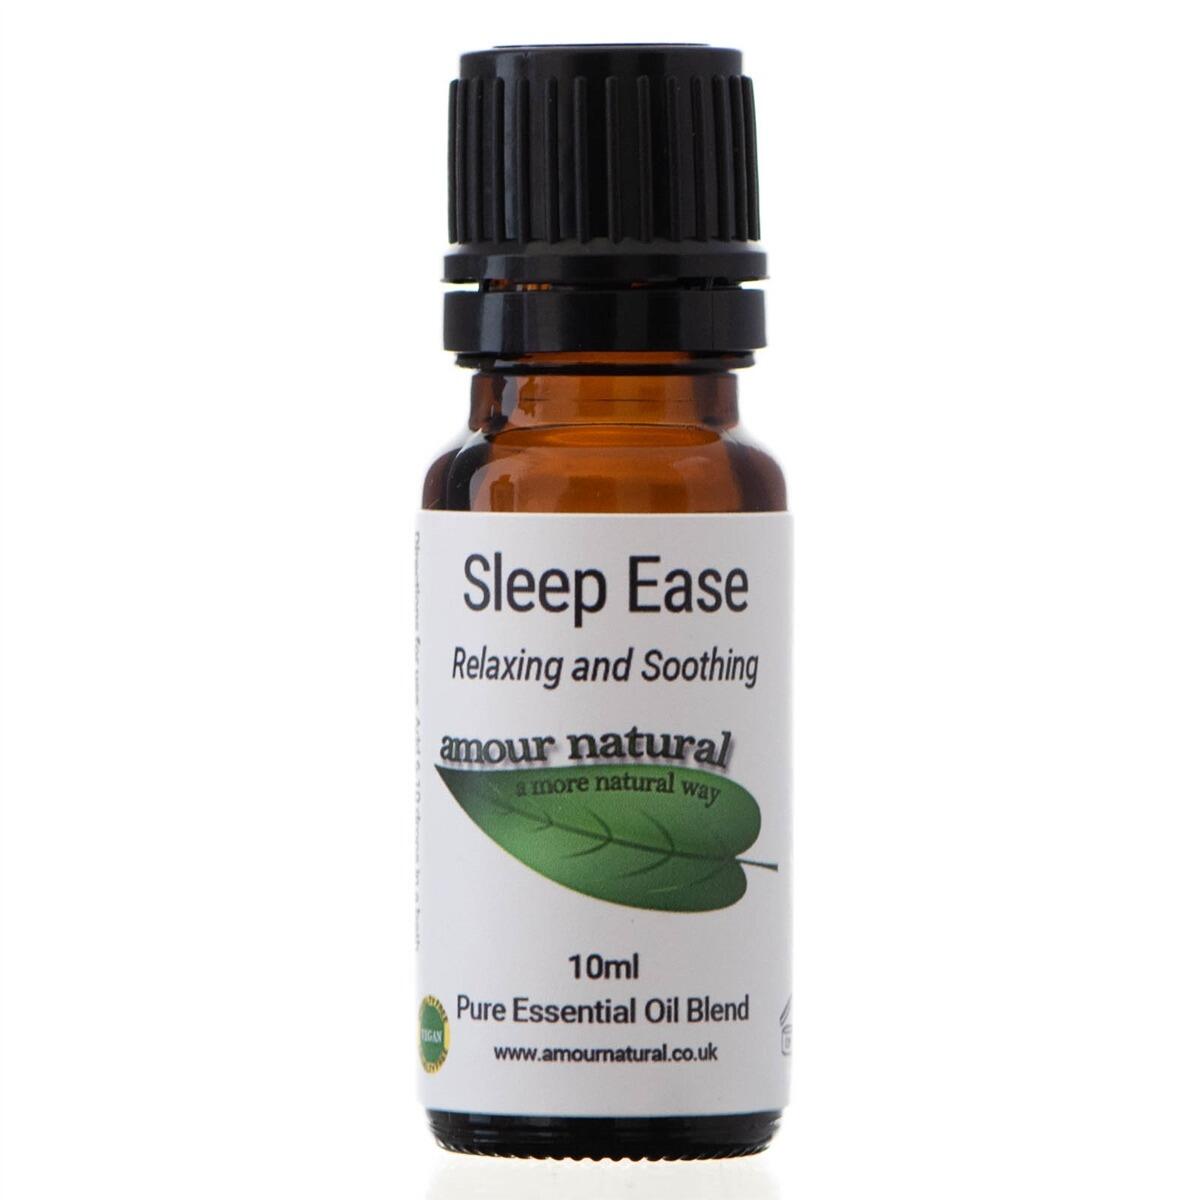 Sleep ease oil